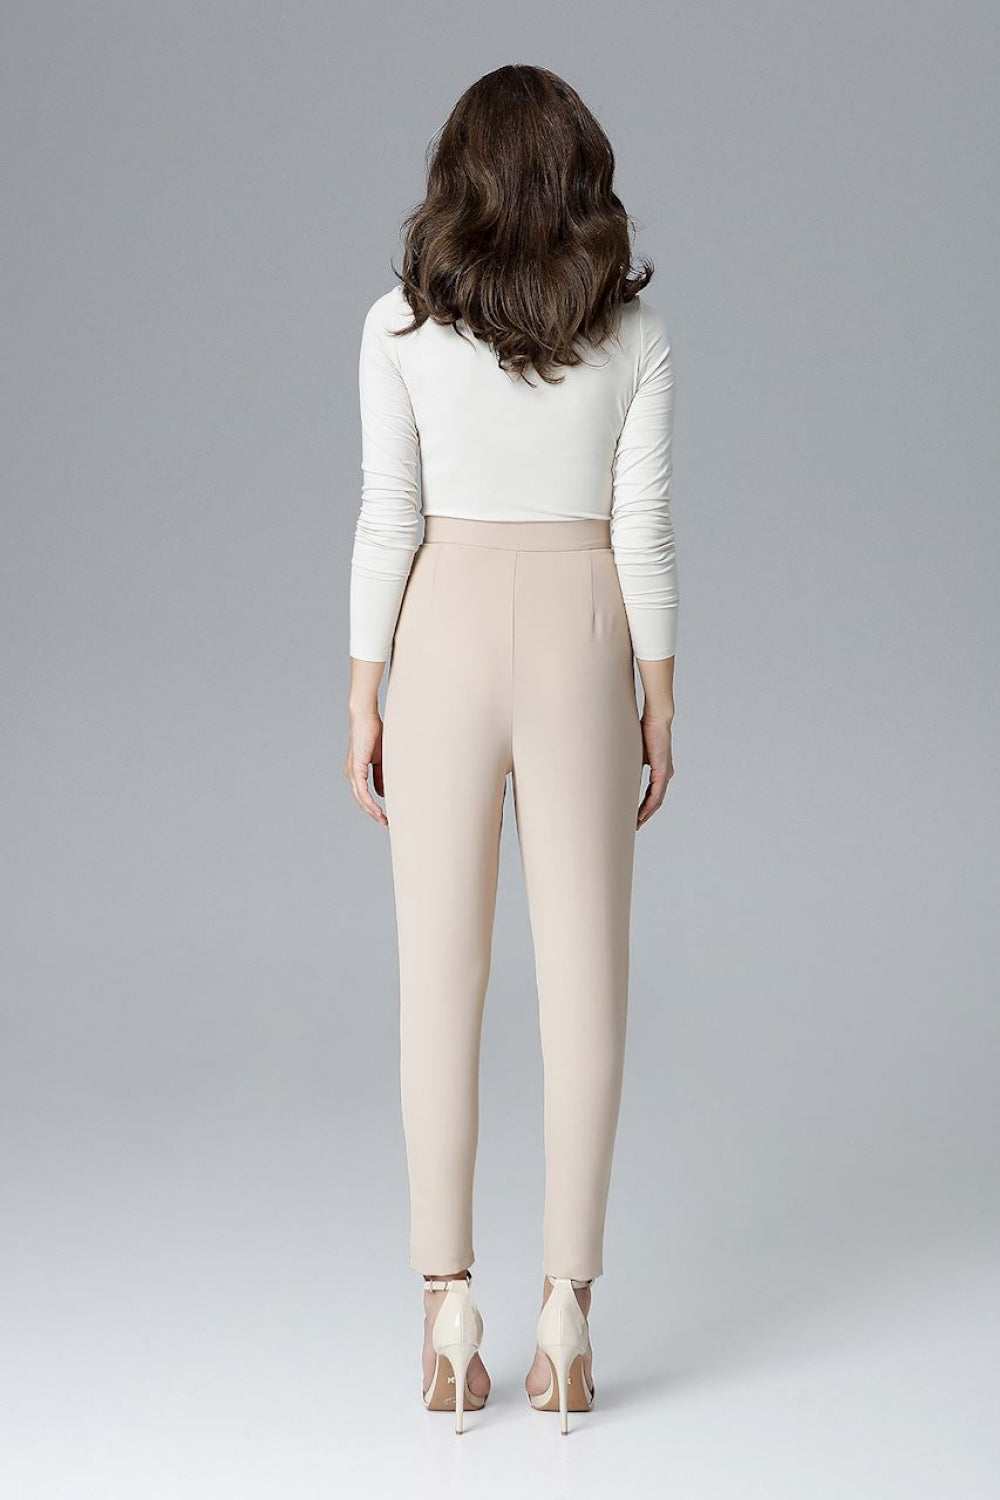 Women trousers model 128531 Elsy Style Casual Pants for Women